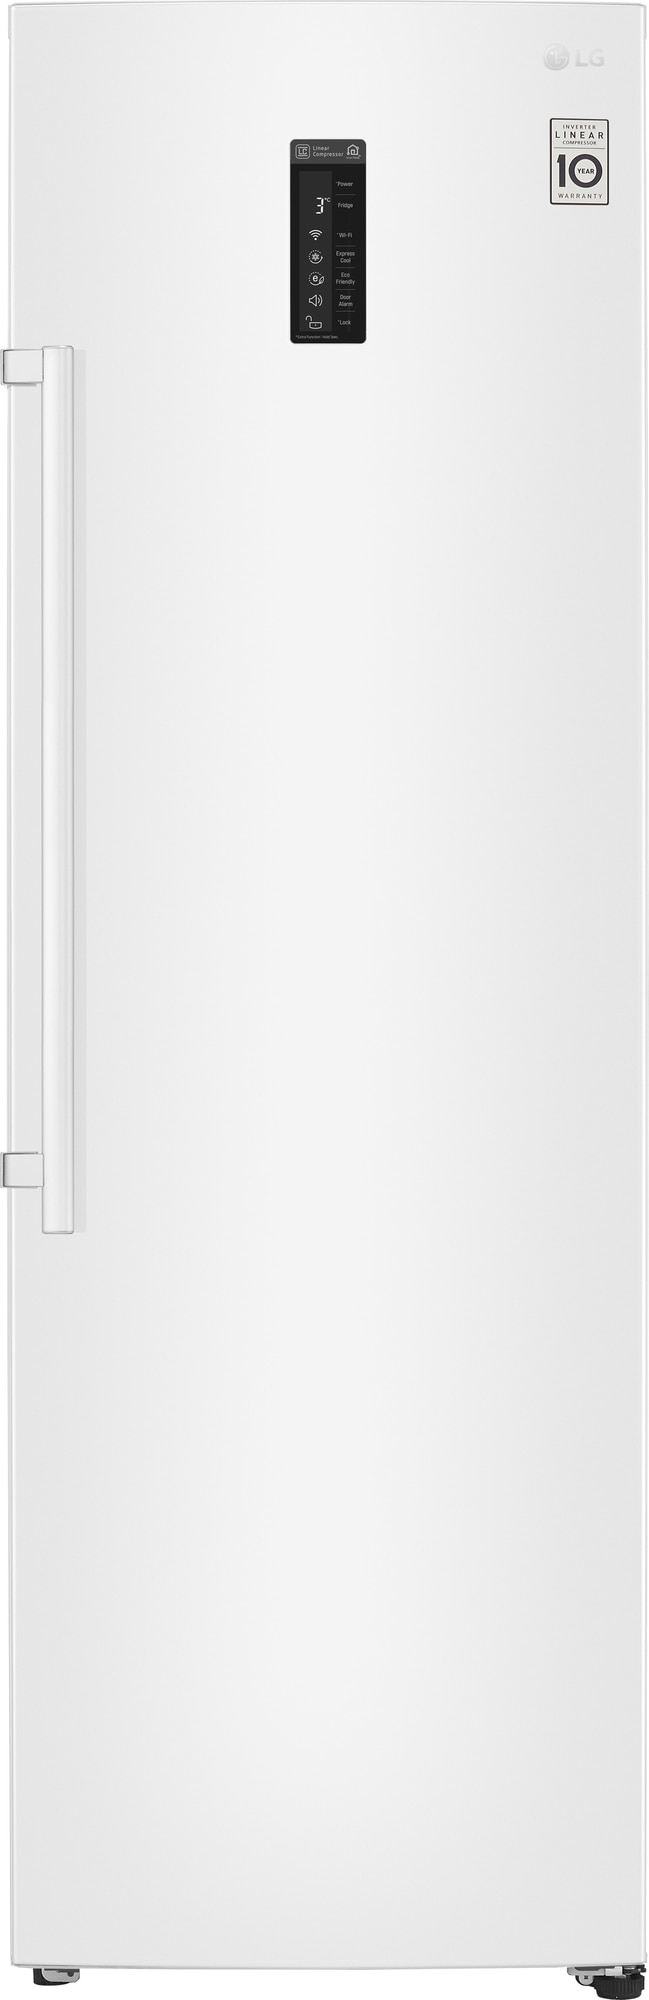 LG køleskab KL5241SWJZ (hvid) thumbnail